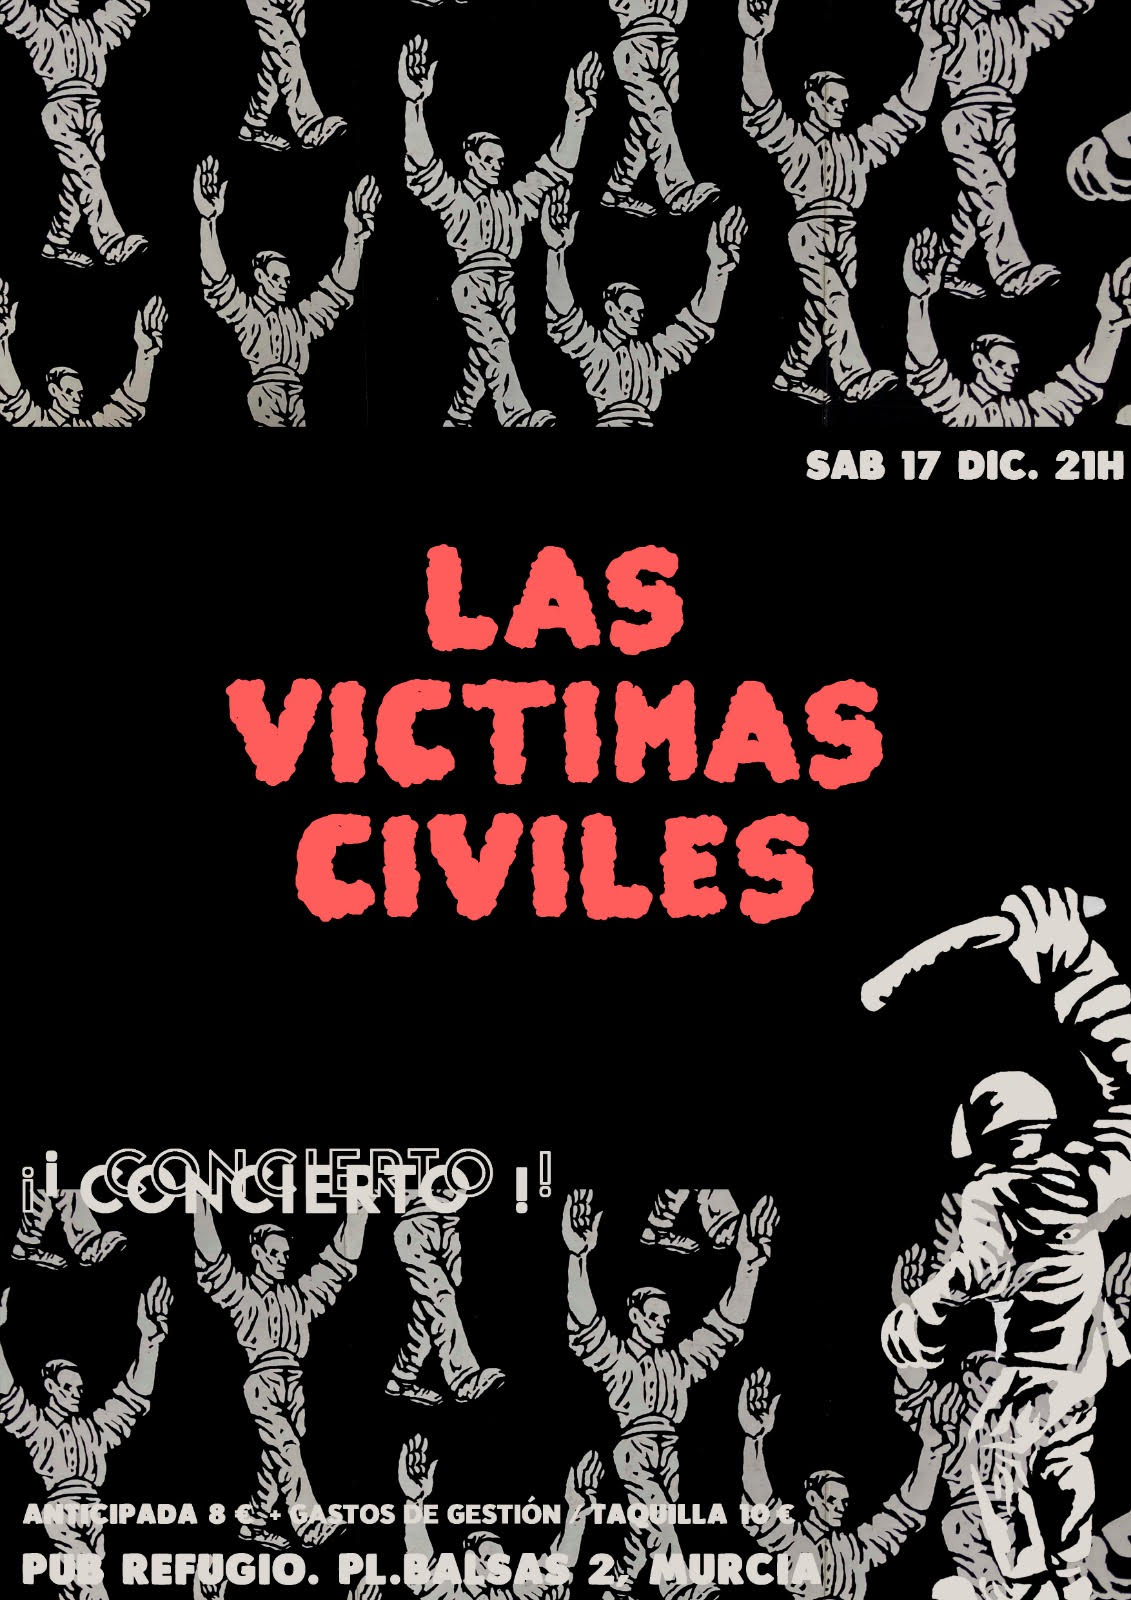 Concierto de Las victimas civiles en Murcia